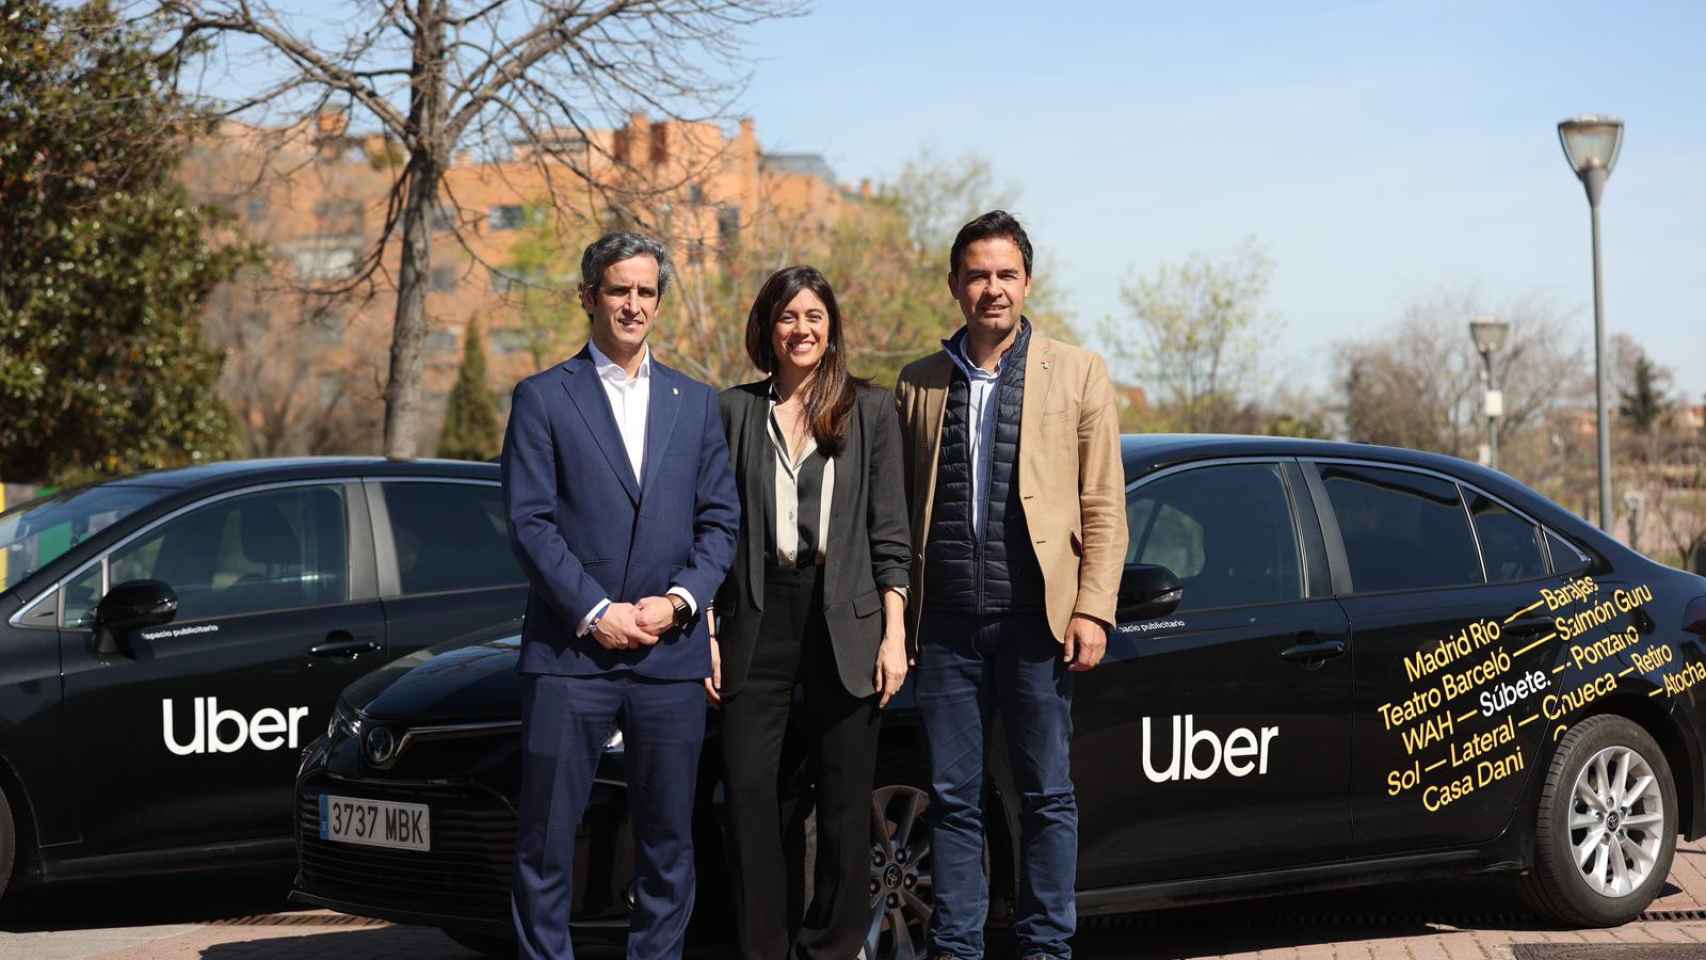 El alcalde de Alcobendas, Aitor Retolaza; la directora de Uber España, Lola Vilas; y el concejal de Innovación, Transformación Digital, Desarrollo Económico y Movilidad de Alcobendas, Roberto Fraile.